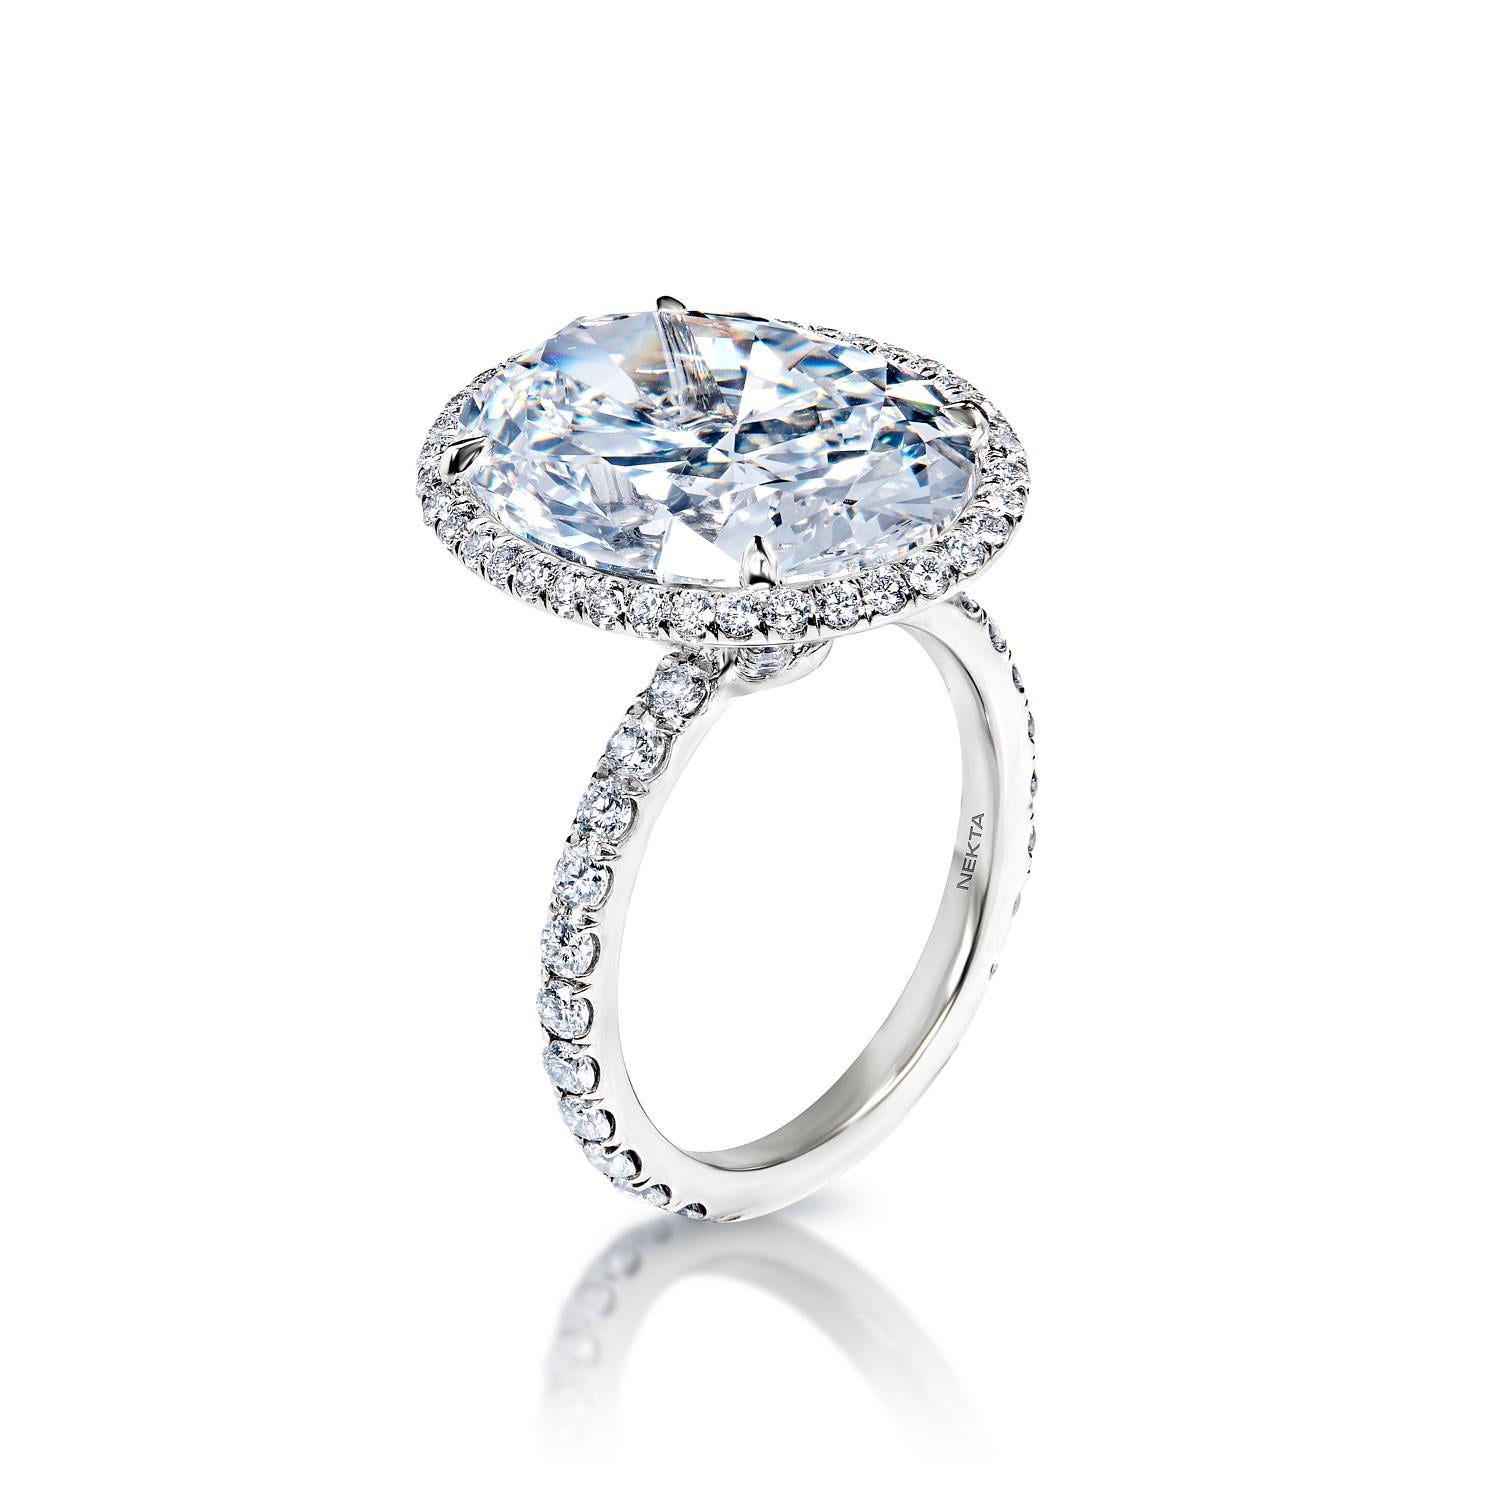 10 carat oval diamond ring